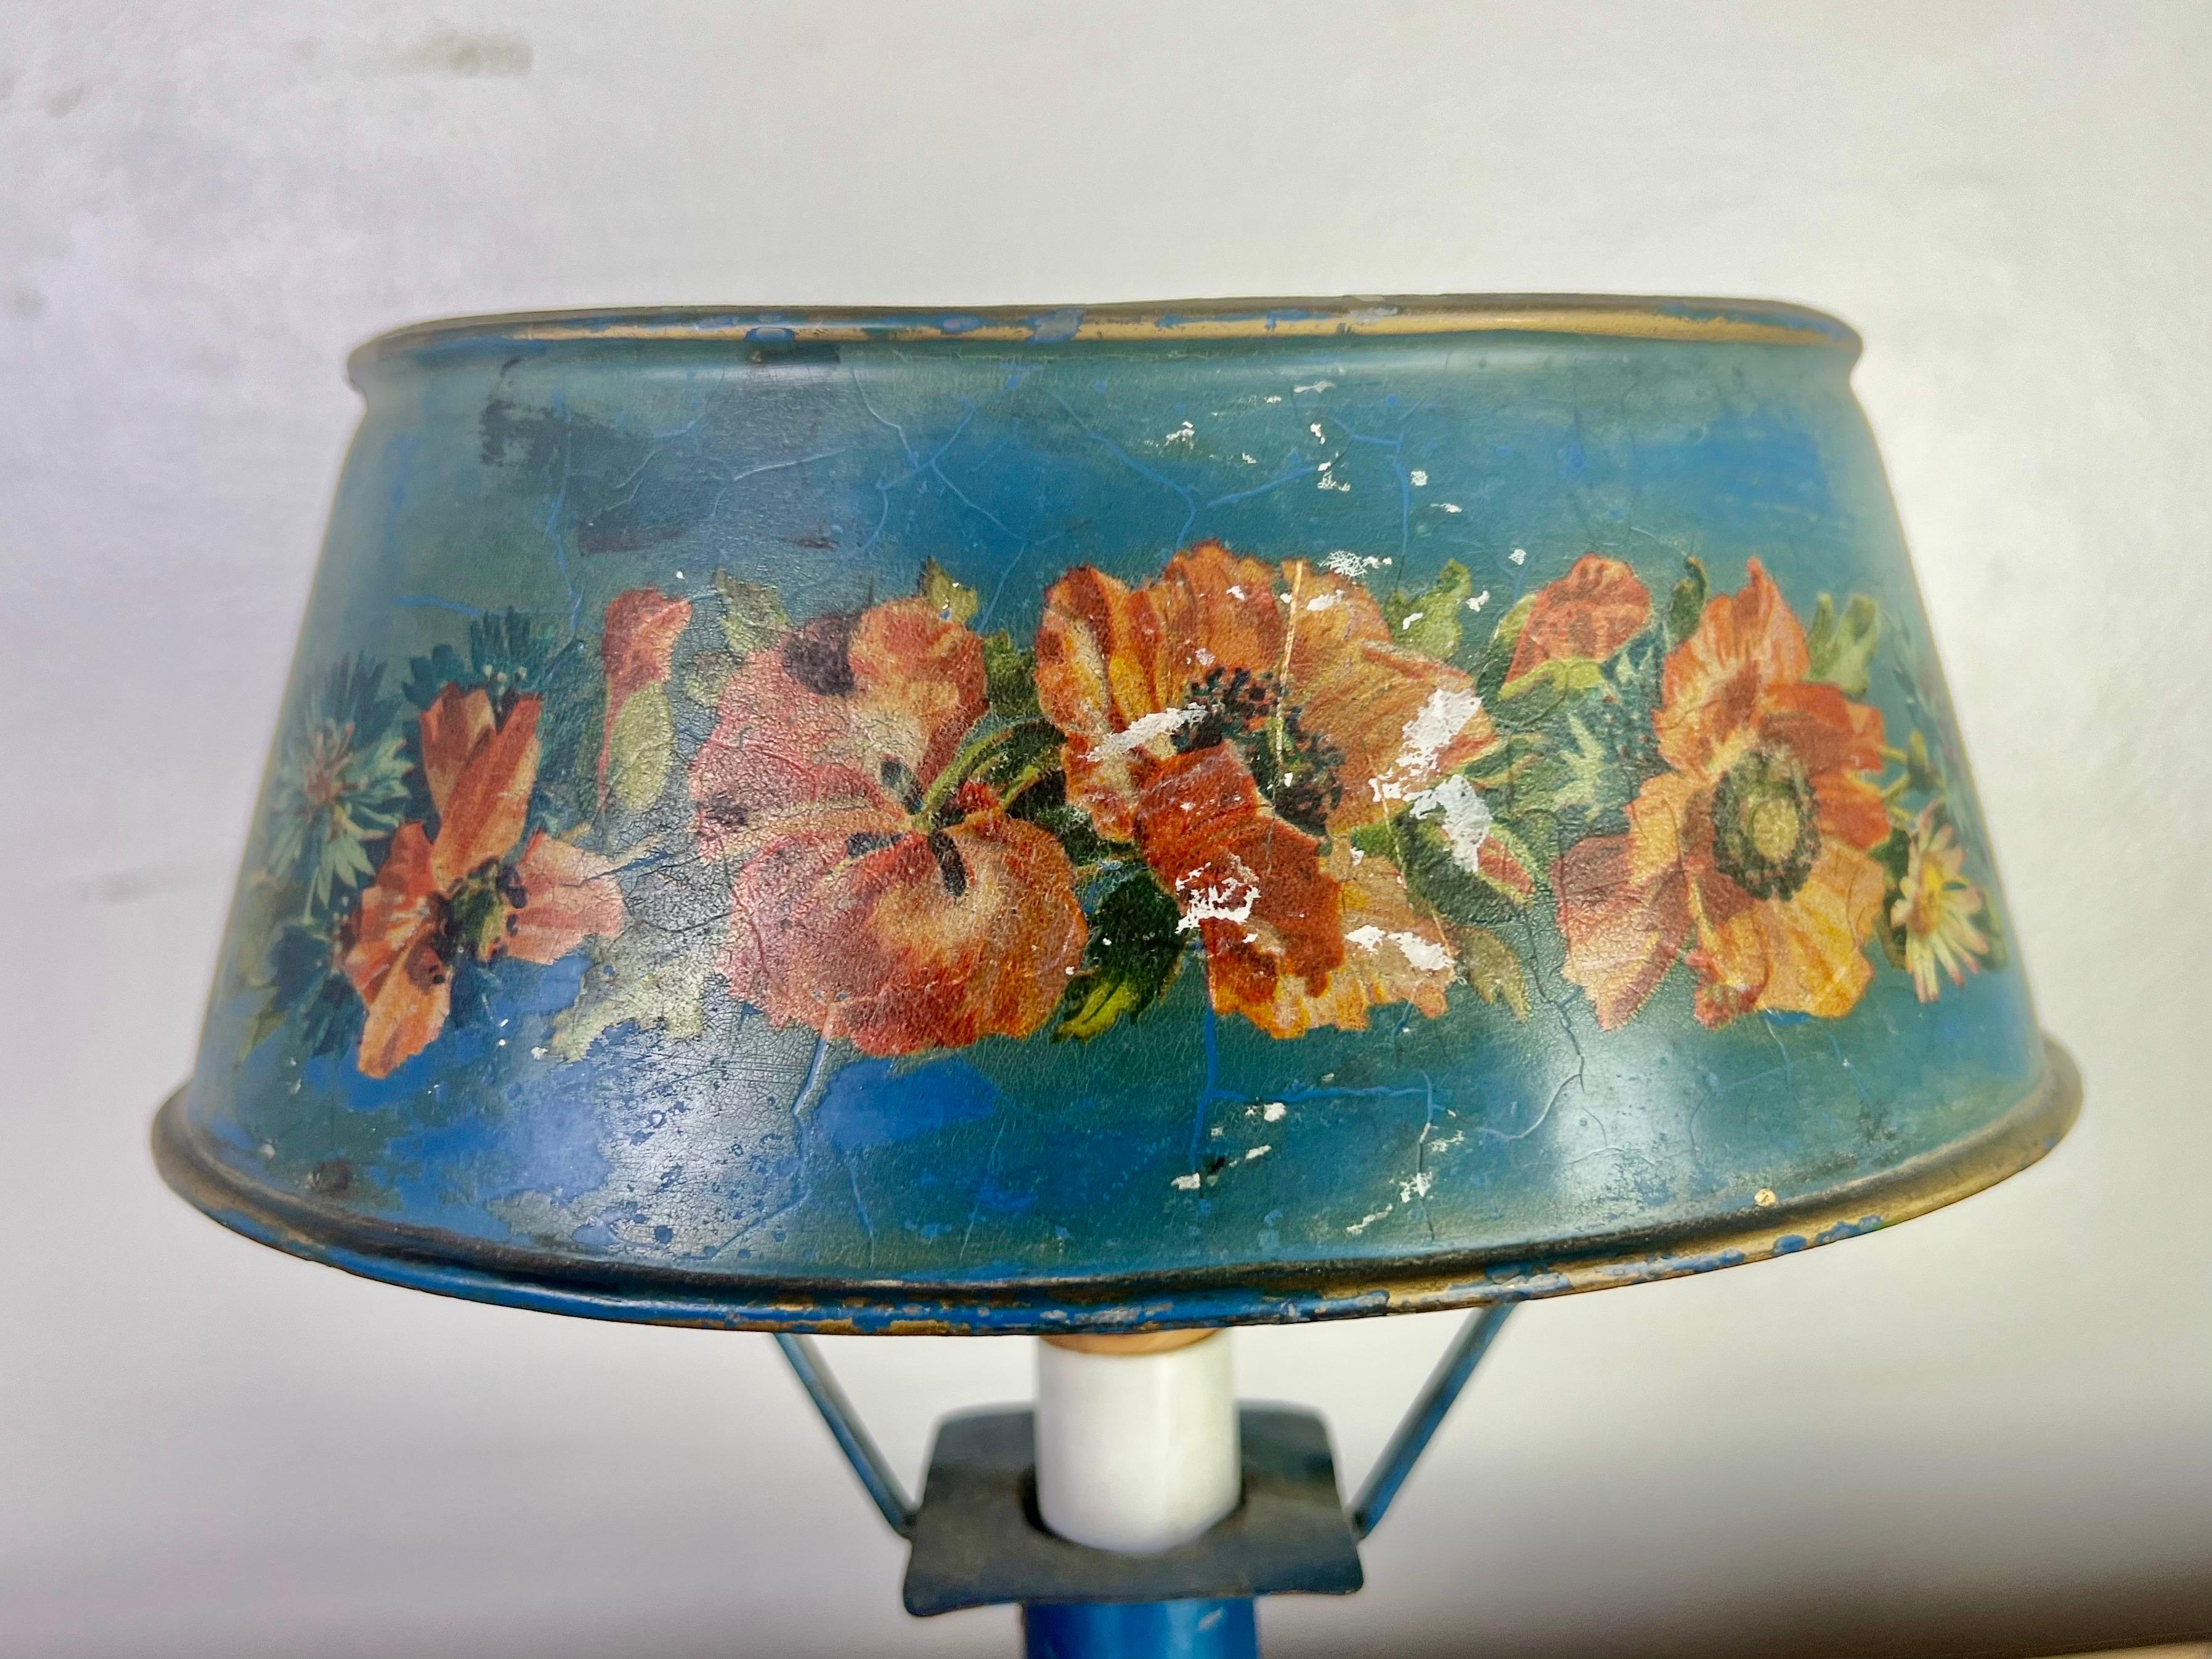 Charmante lampe vénitienne peinte à la main avec des fleurs corail et jaunes sur fond bleu.  La lampe est en état de marche.  